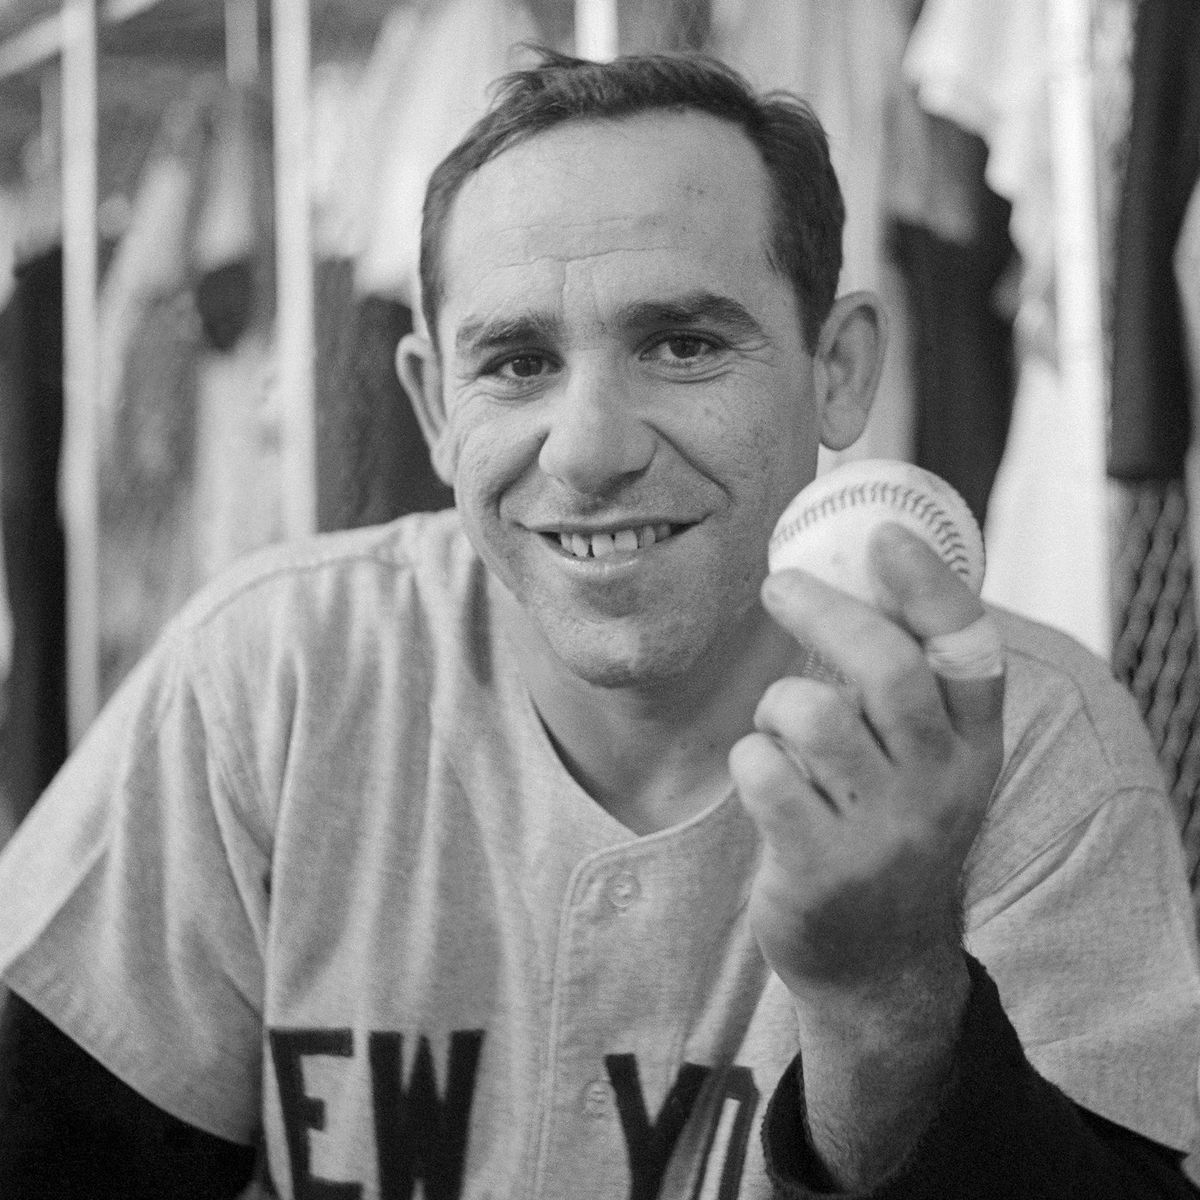 Yogi Berra movie: Family pushed for Yankees icon documentary